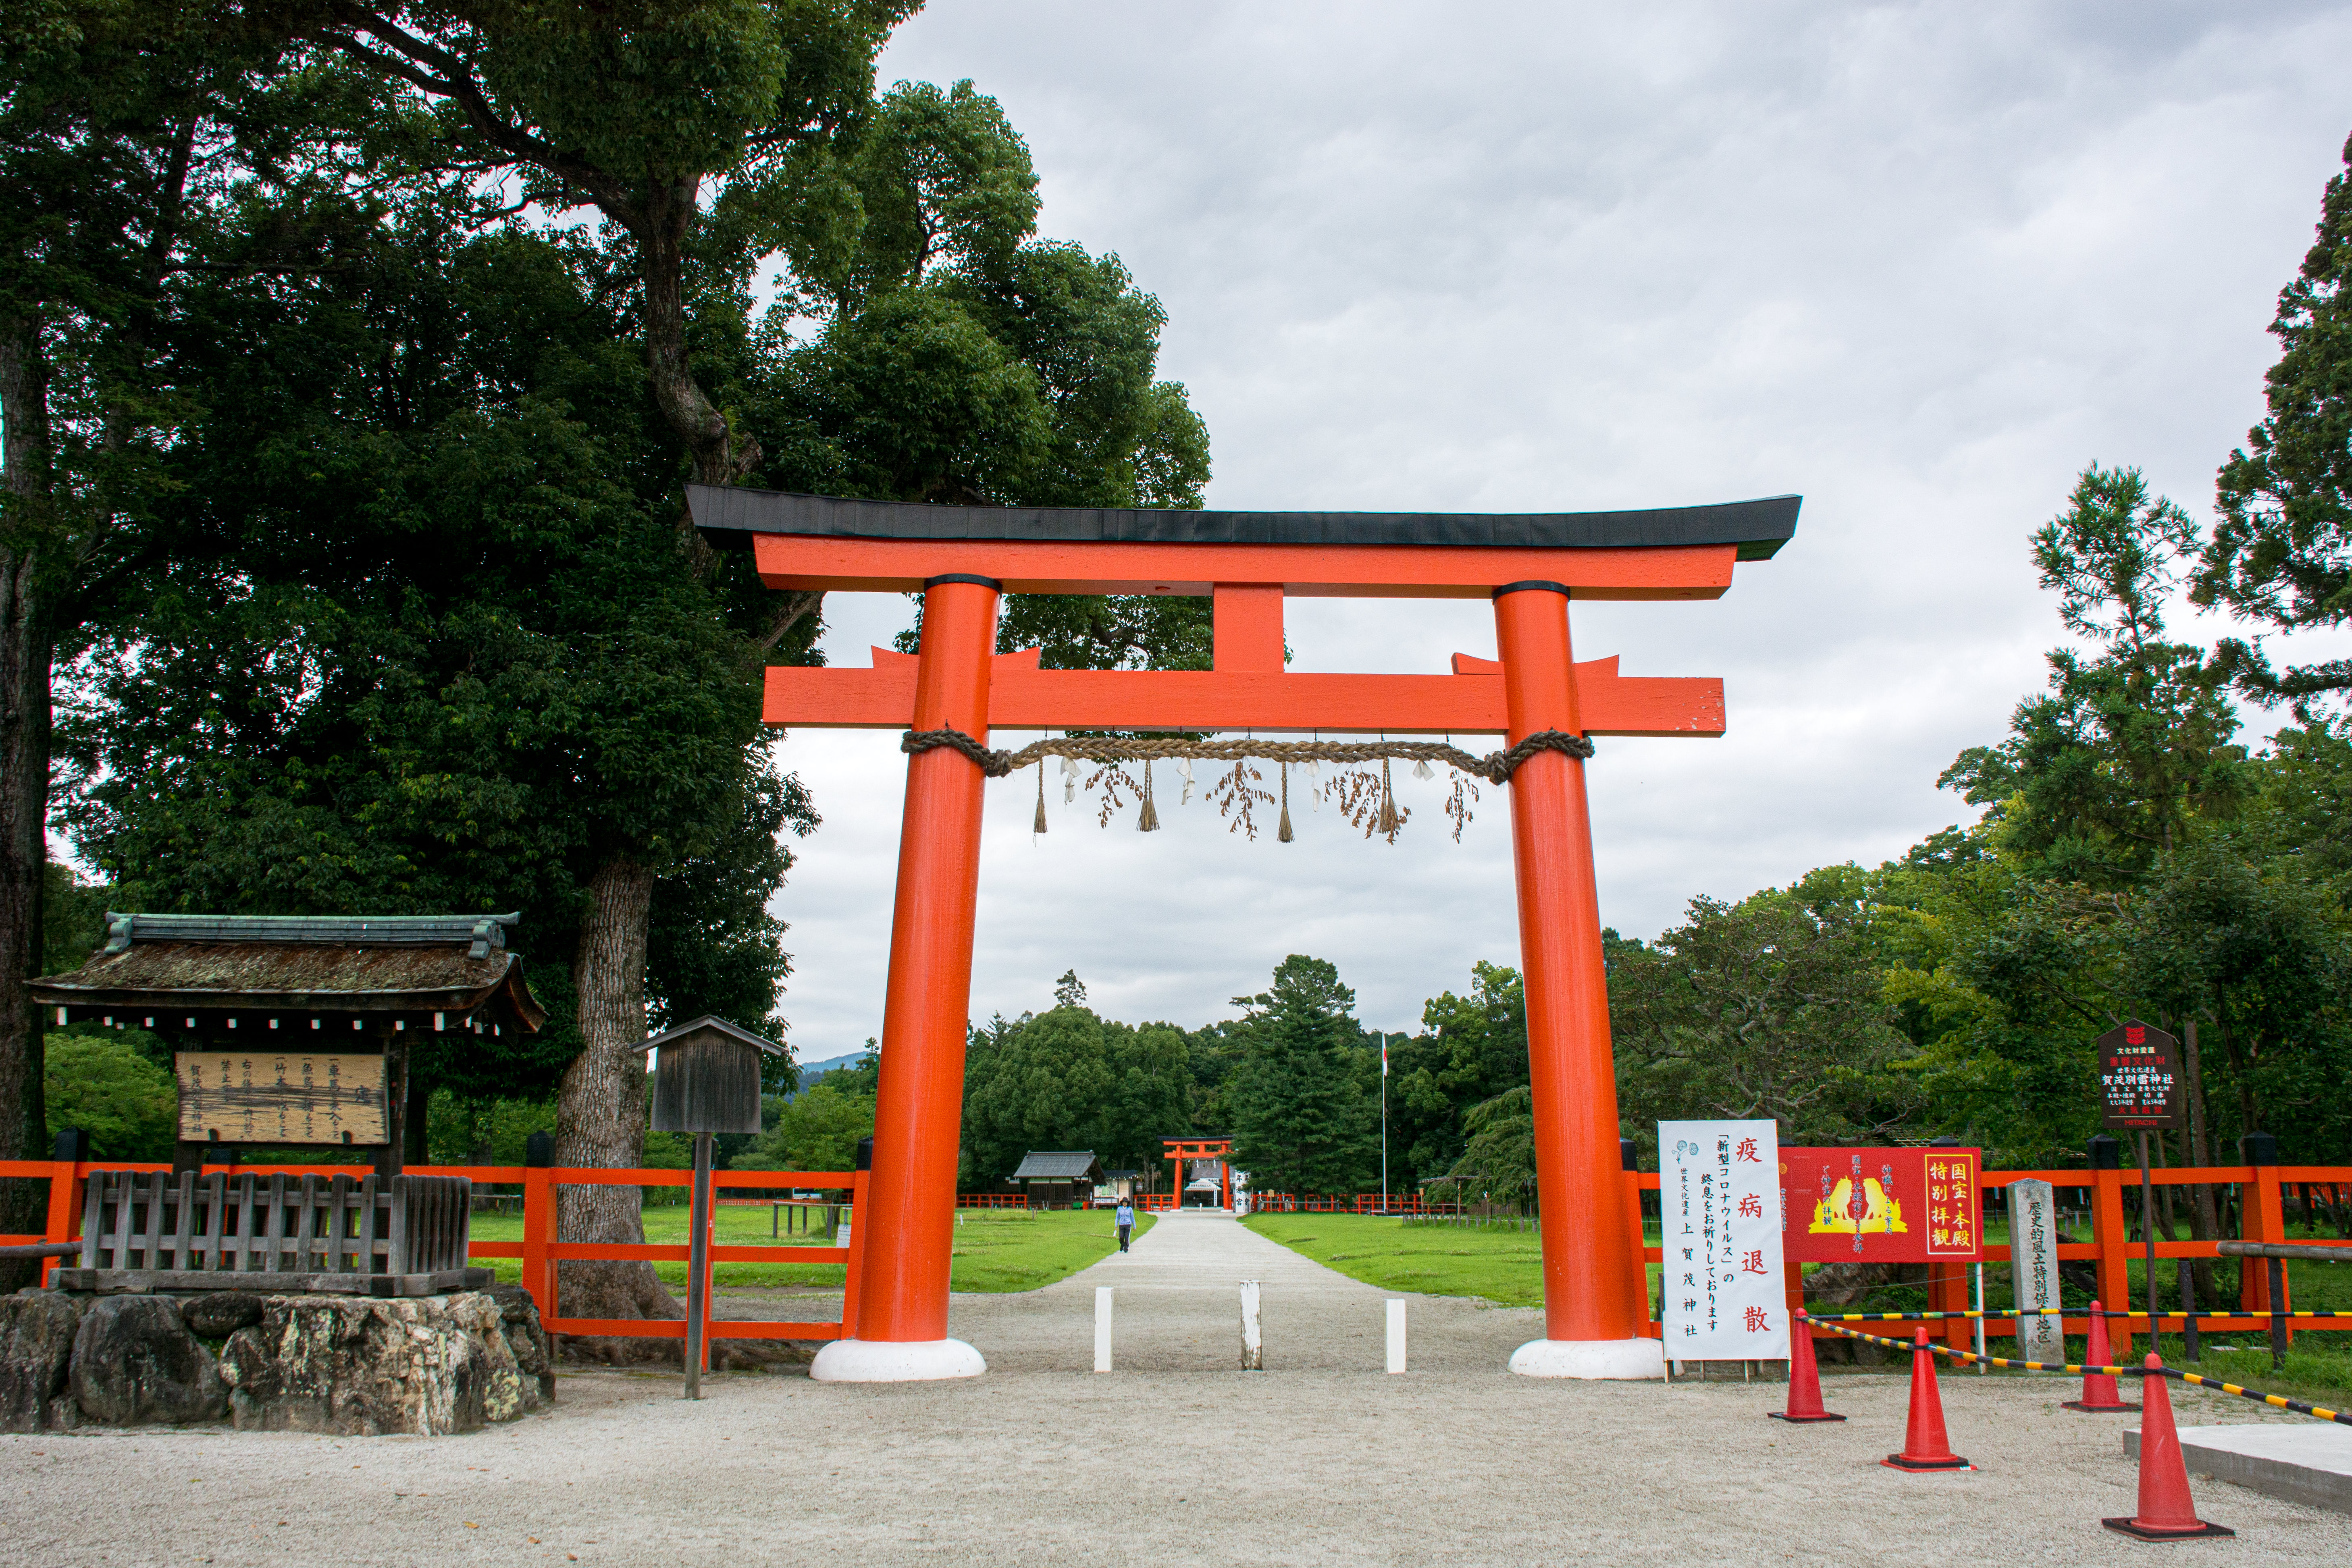 美しい大きな朱塗りの鳥居が入り口に建つ上賀茂神社 かみがもじんじゃ の写真素材 ぱくたそ